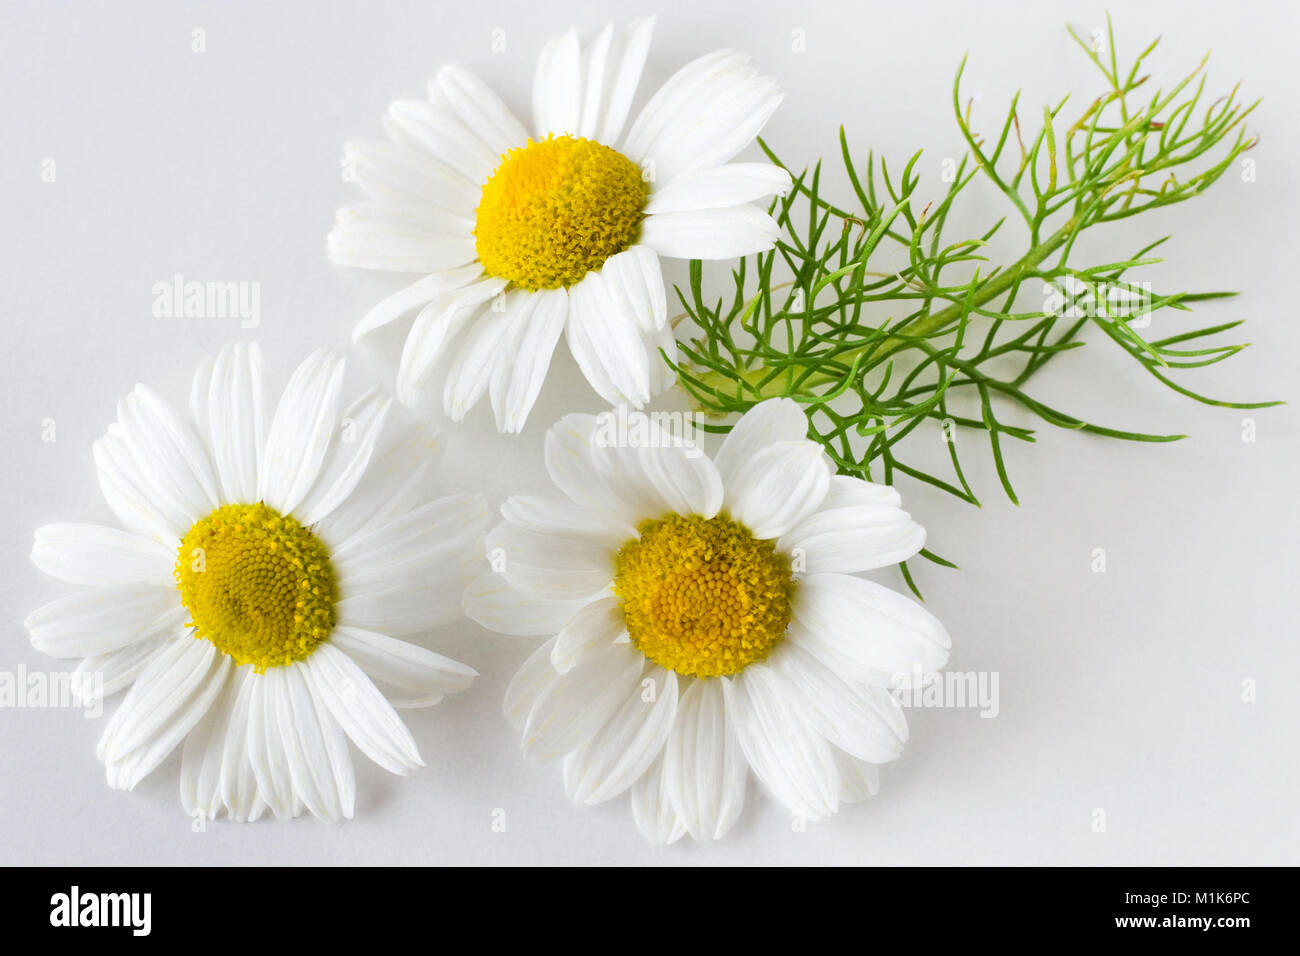 Camomille (Matricaria chamomilla) - soins de santé et de traitement médical - fleurs blanches sur le fond blanc Banque D'Images